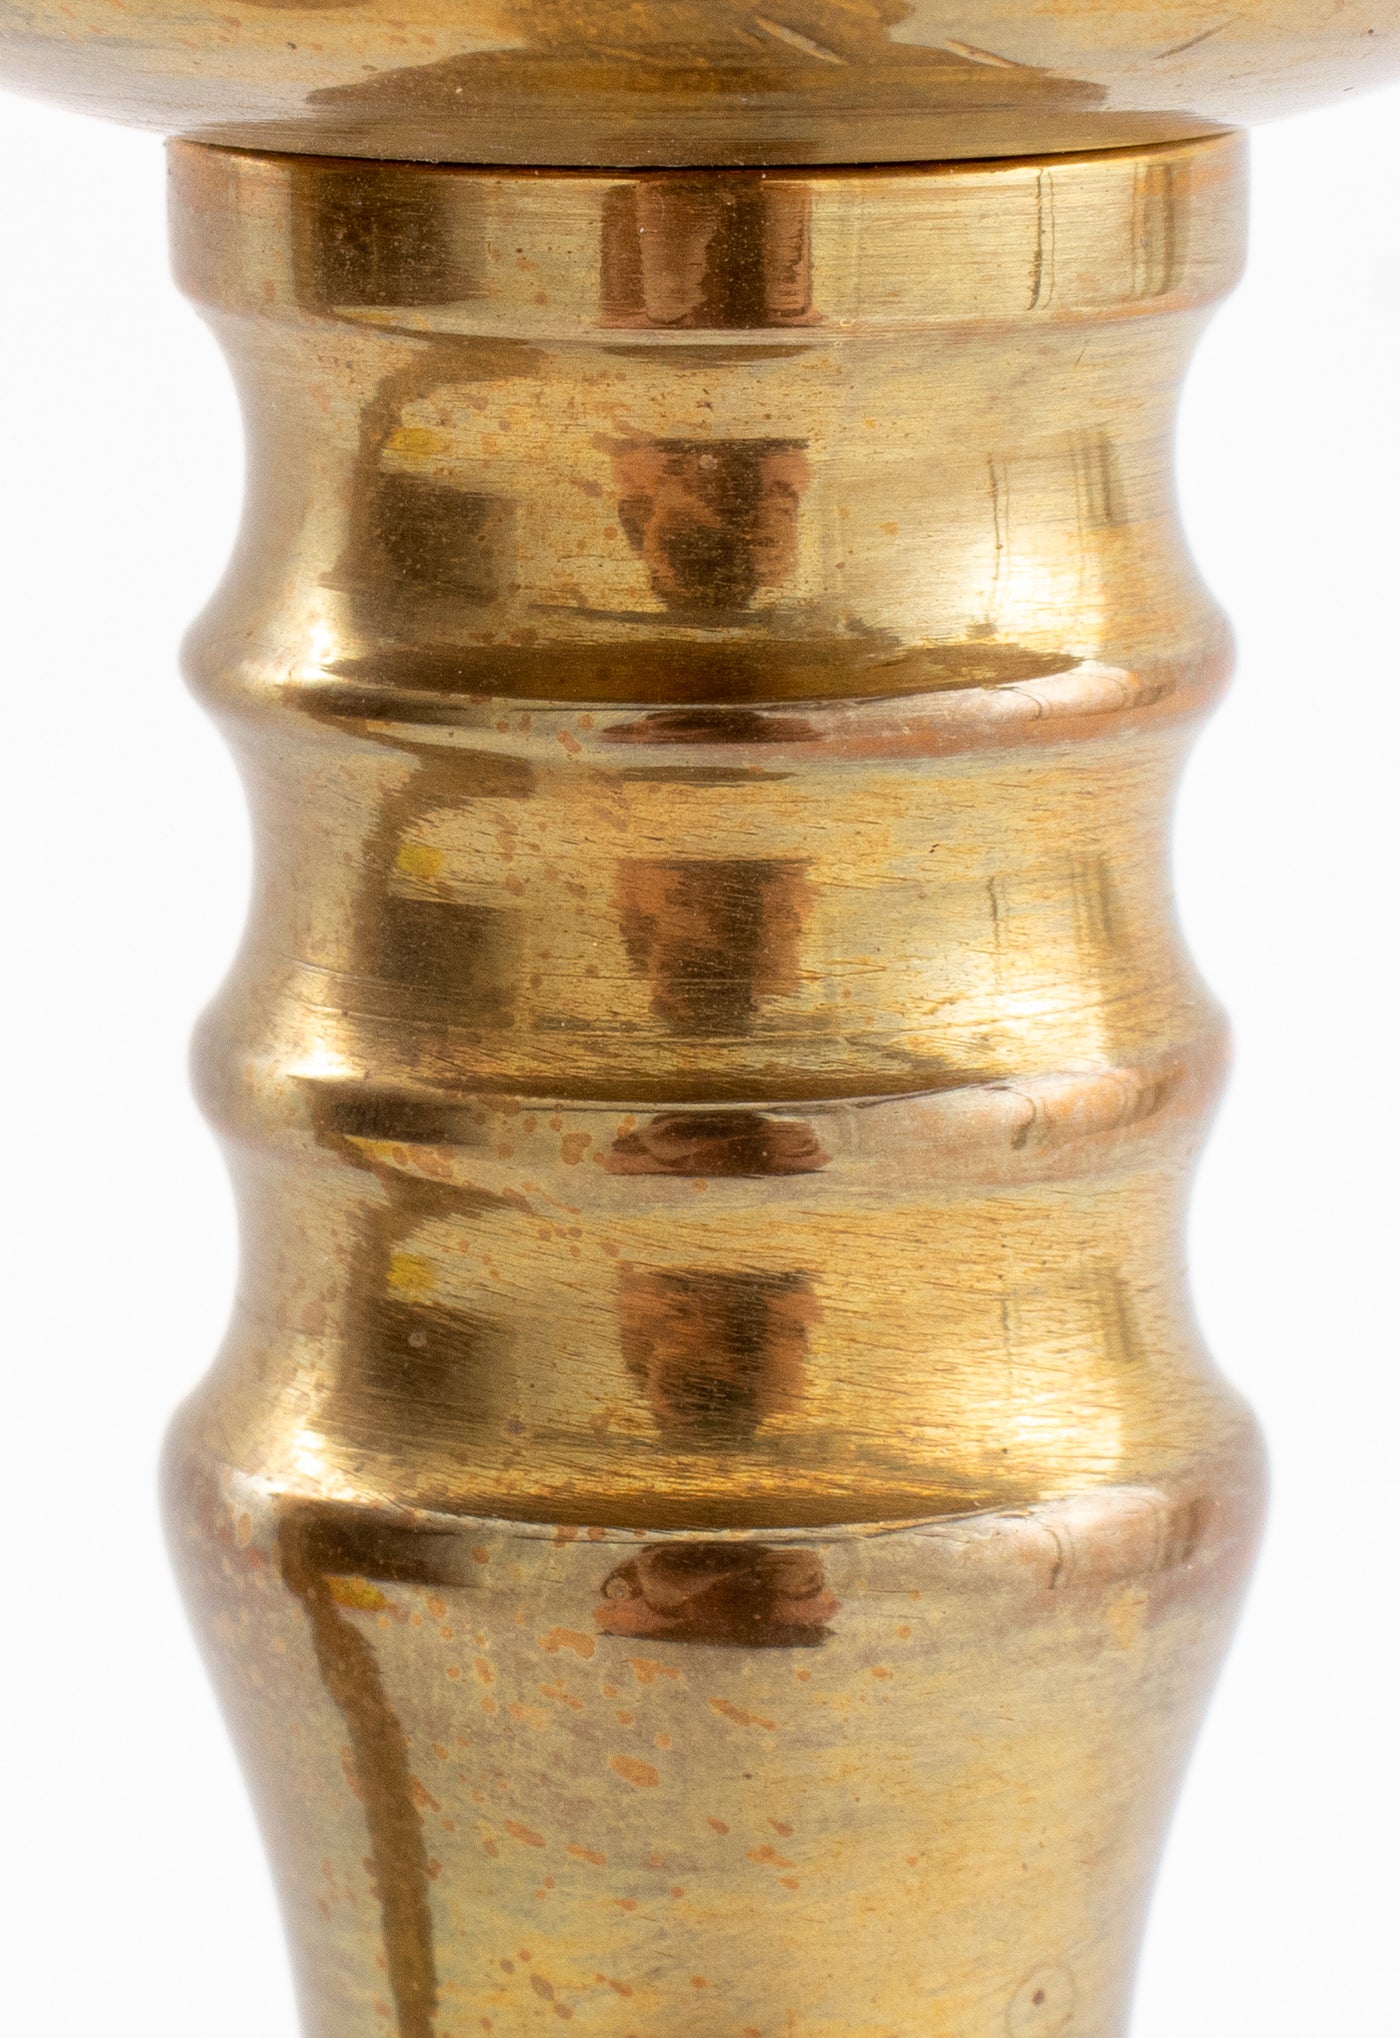 Pair of brass bell shape candlesticks, 11 high, pair of brass candlesticks  with oval bases, 10 high, pair of brass beehive candlesticks, 12 high